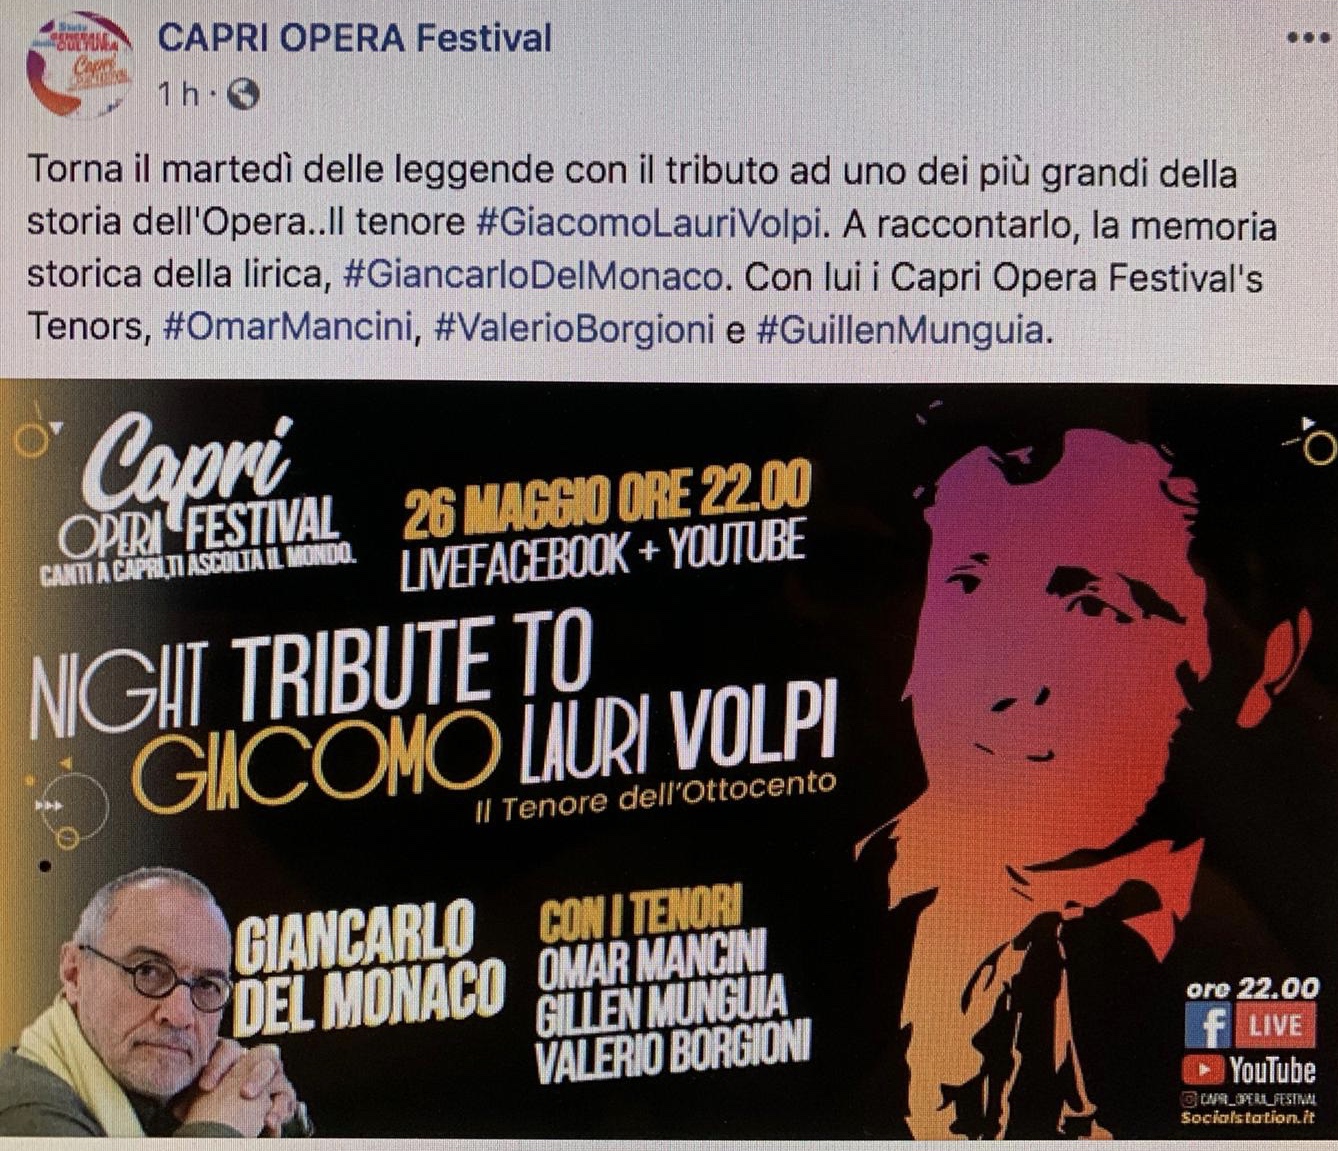 Capri Opera Festival